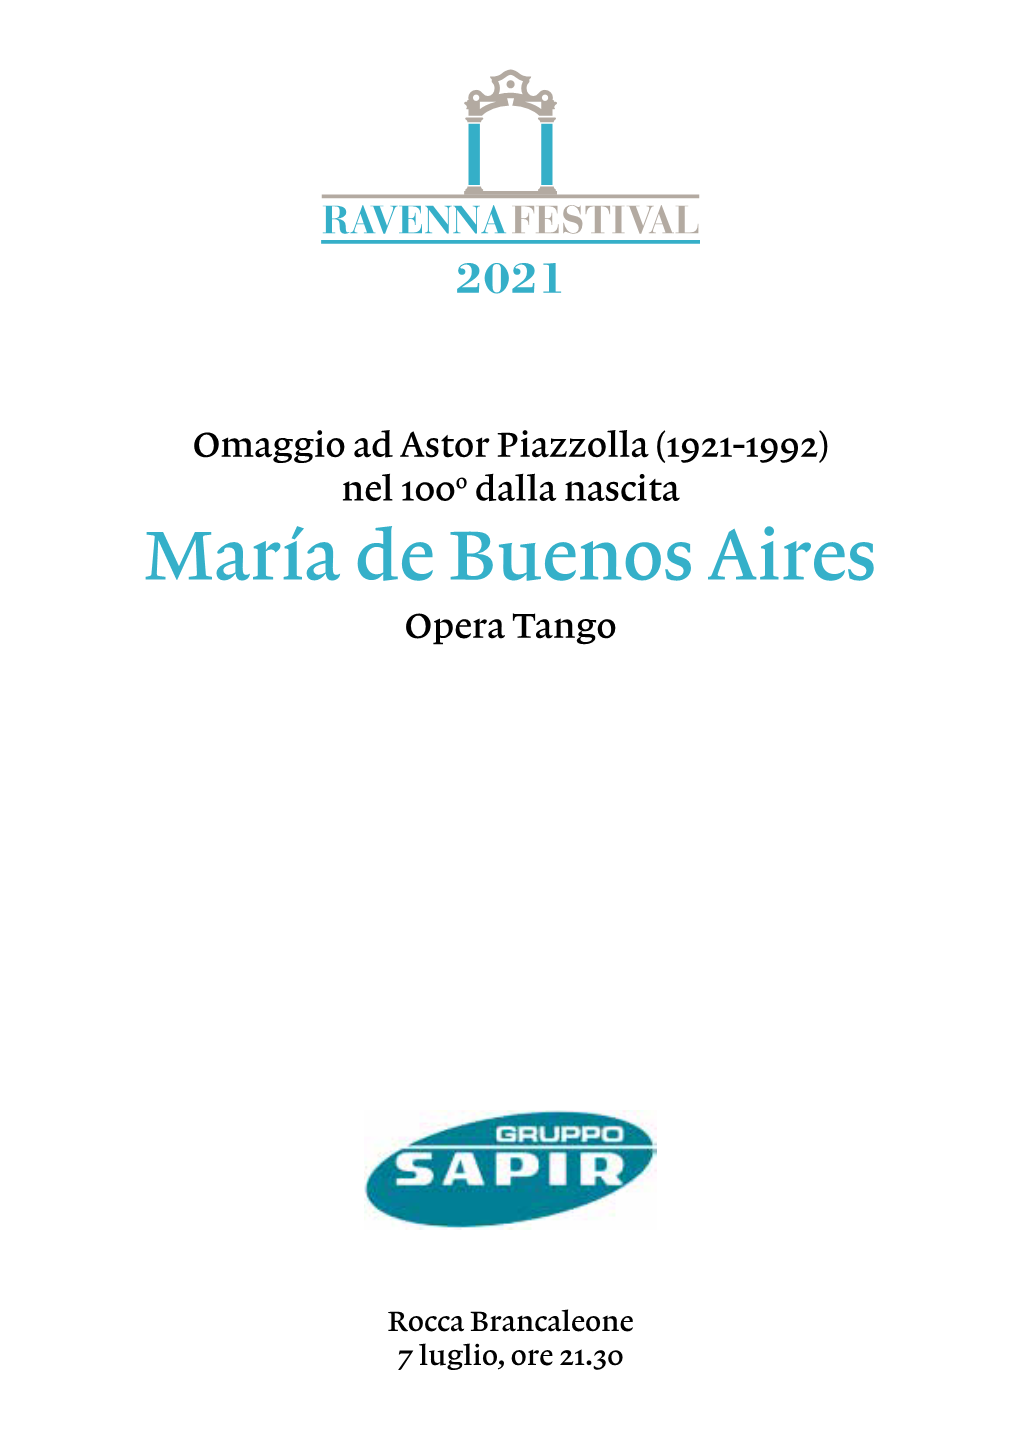 María De Buenos Aires Opera Tango